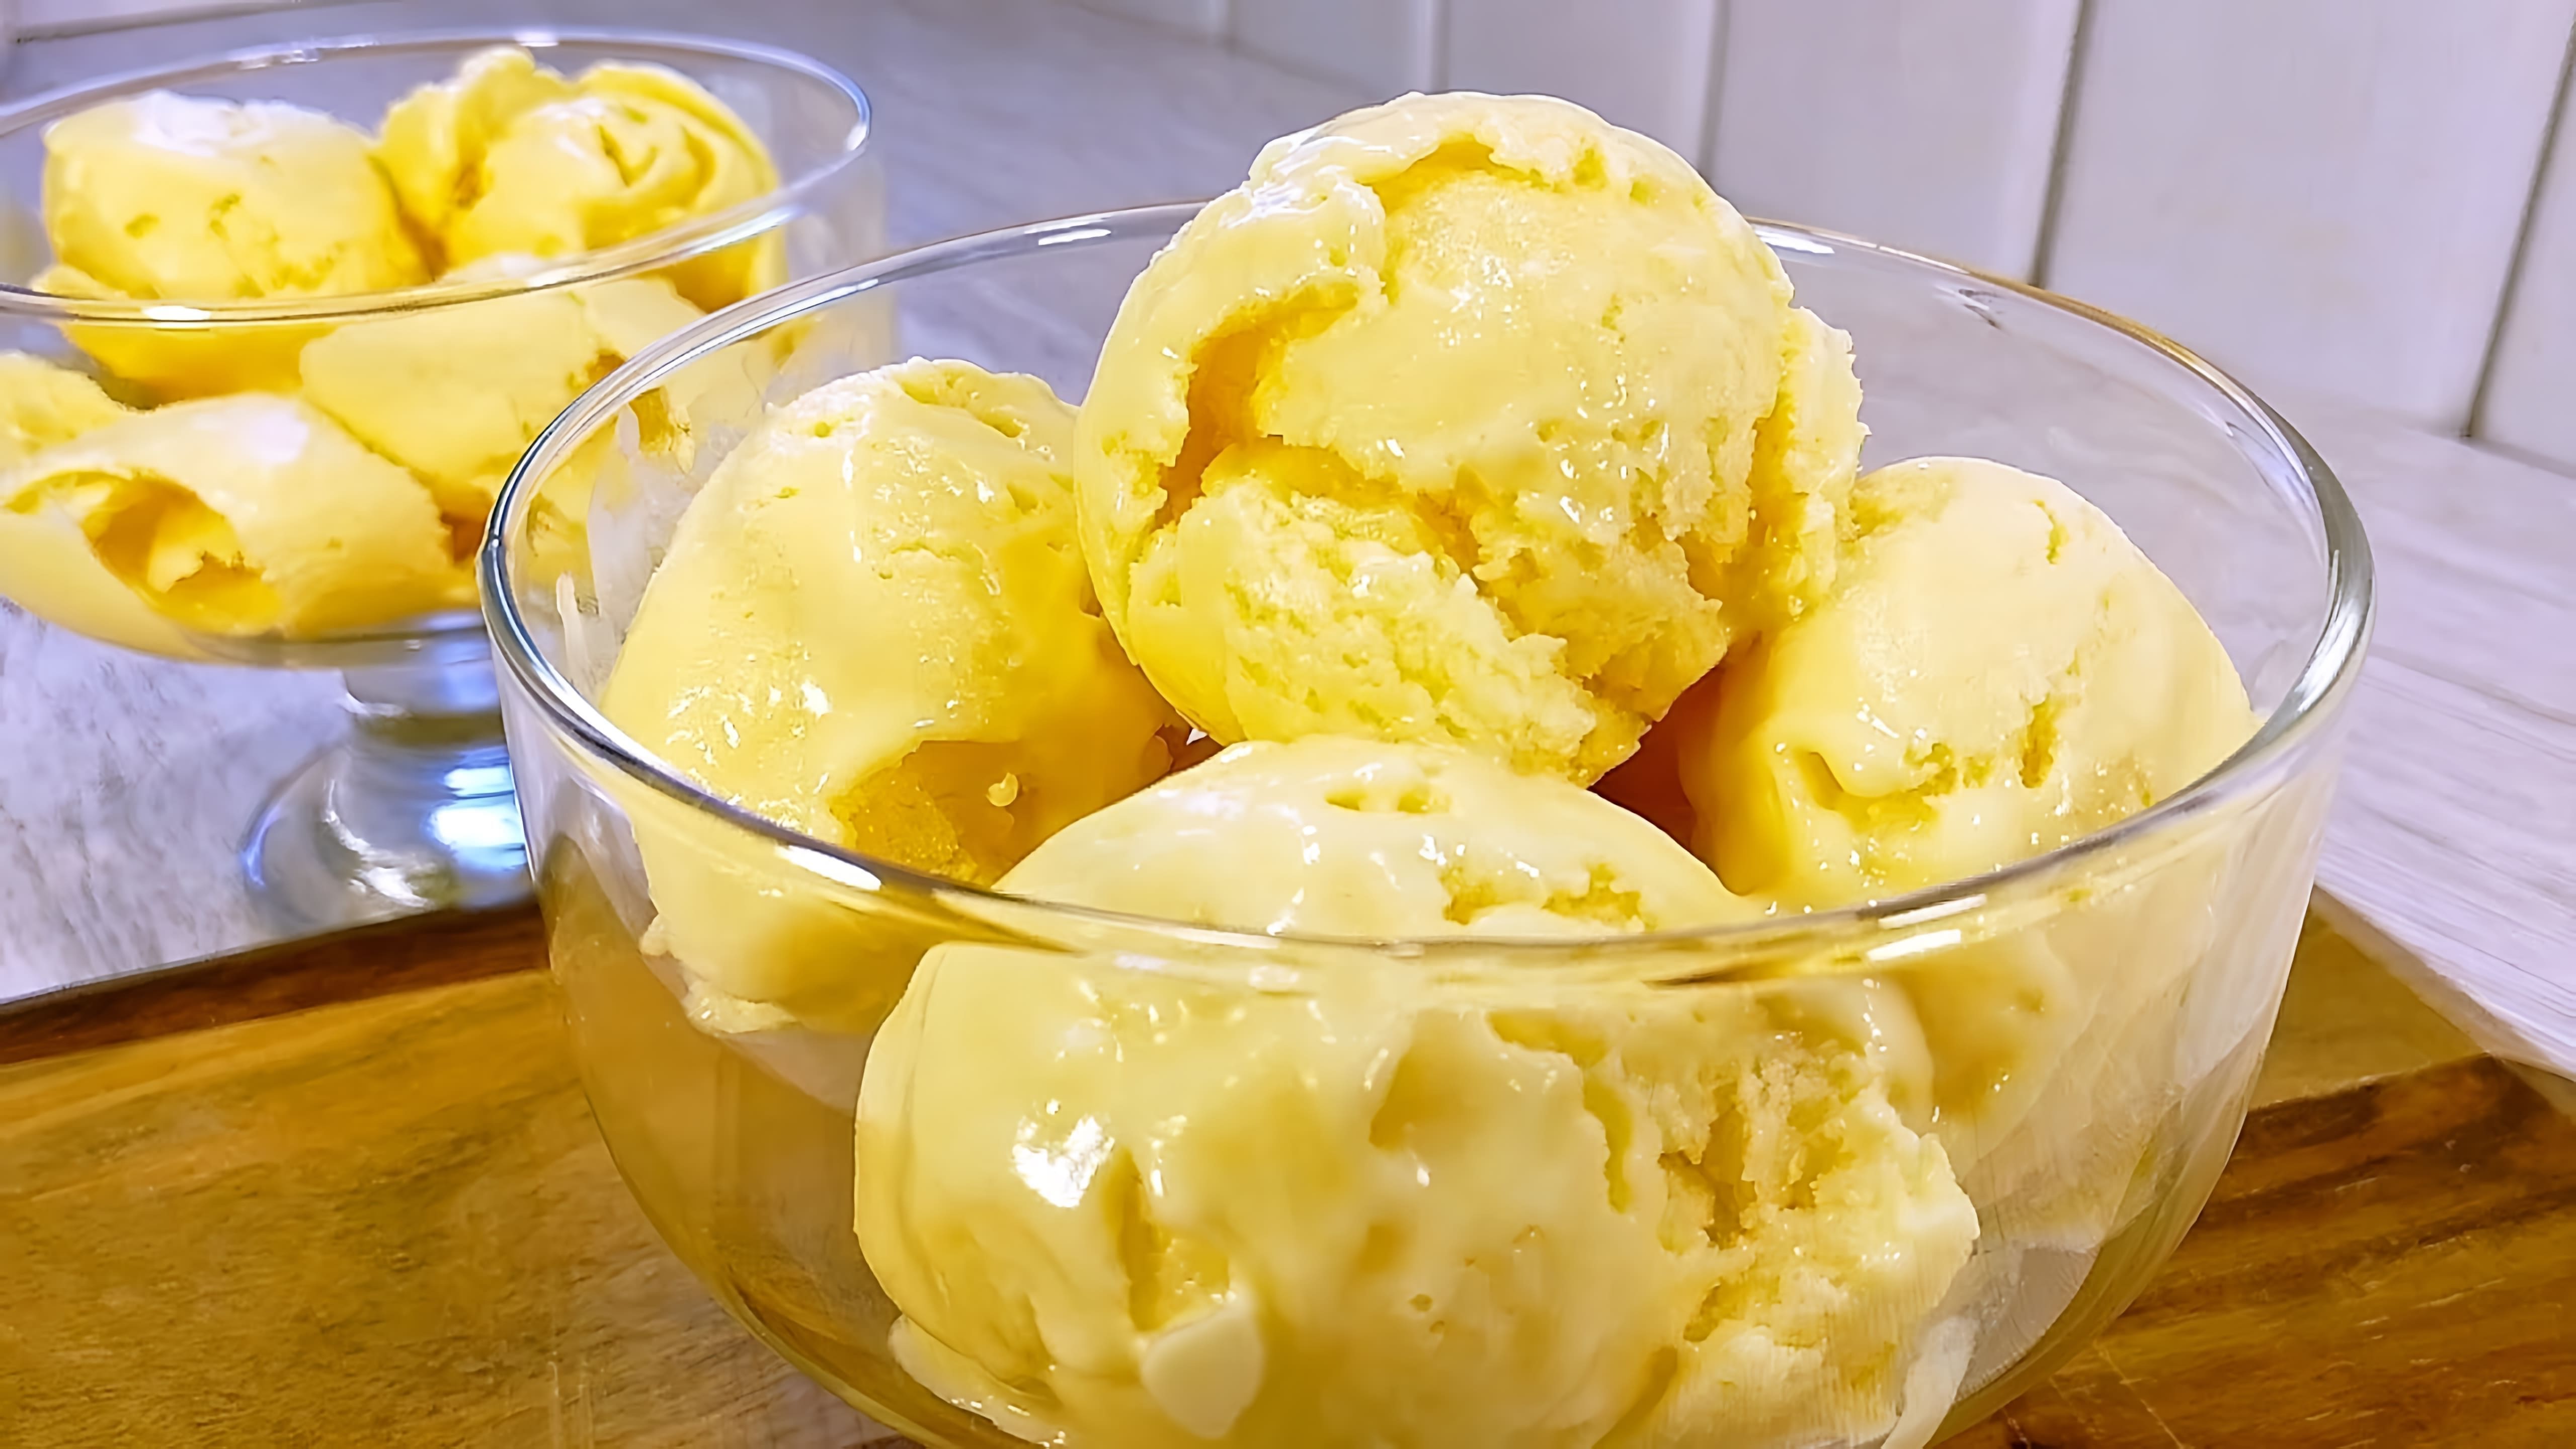 В этом видео демонстрируется процесс приготовления мороженого без сливок